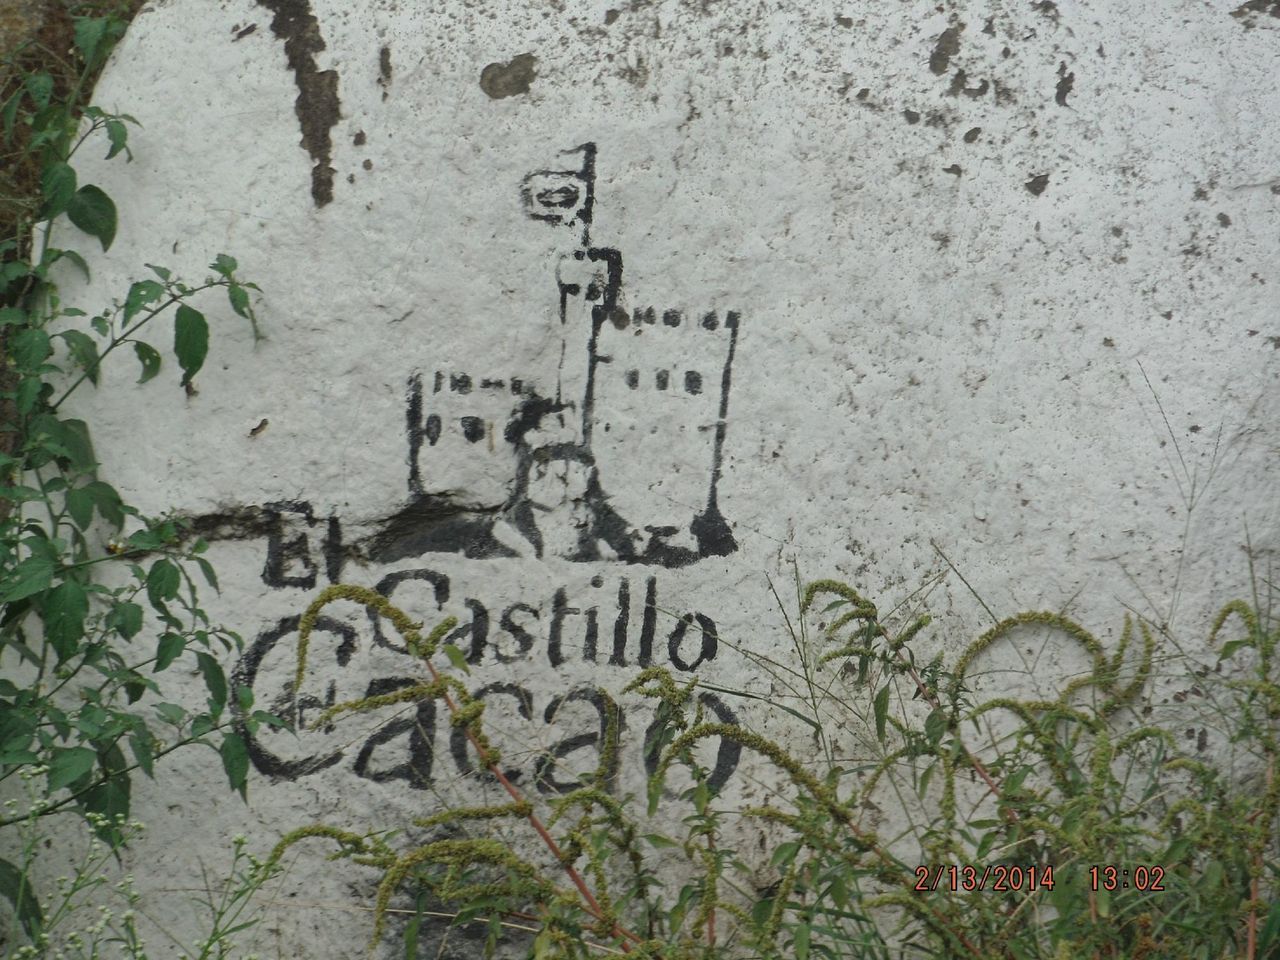 El Castillo del cacao